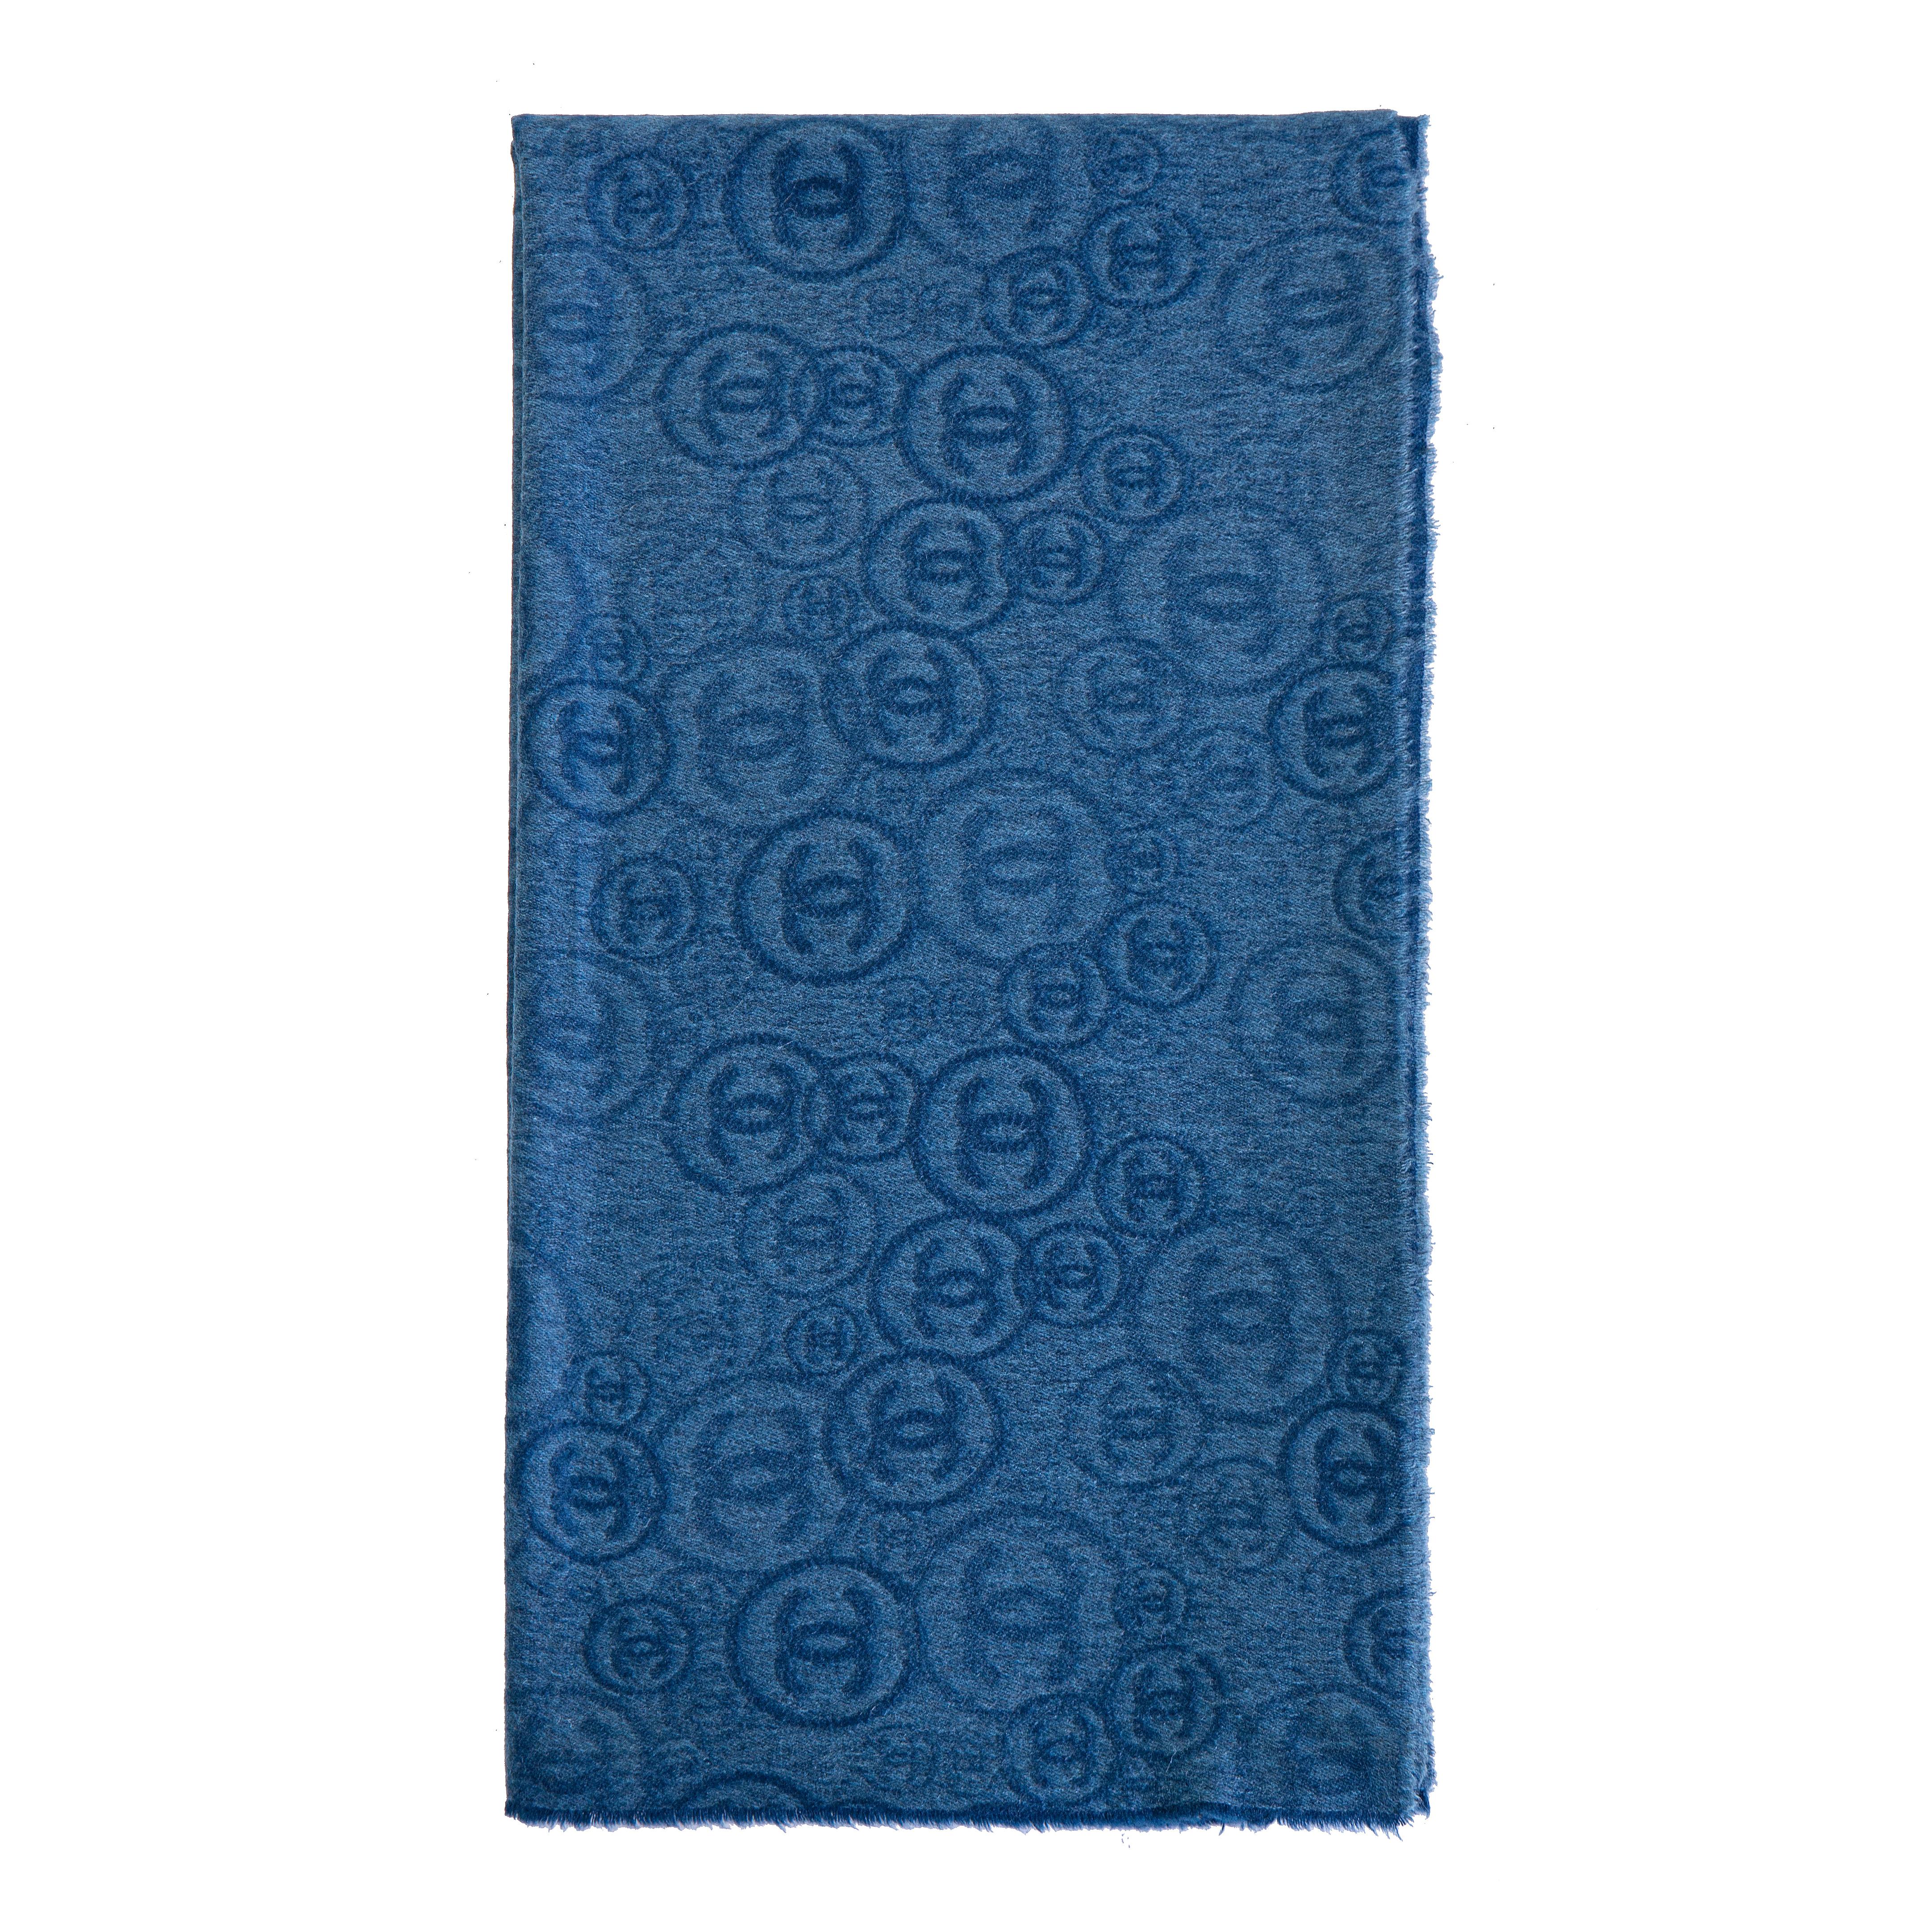 Blue Chanel blue cachemire shawl